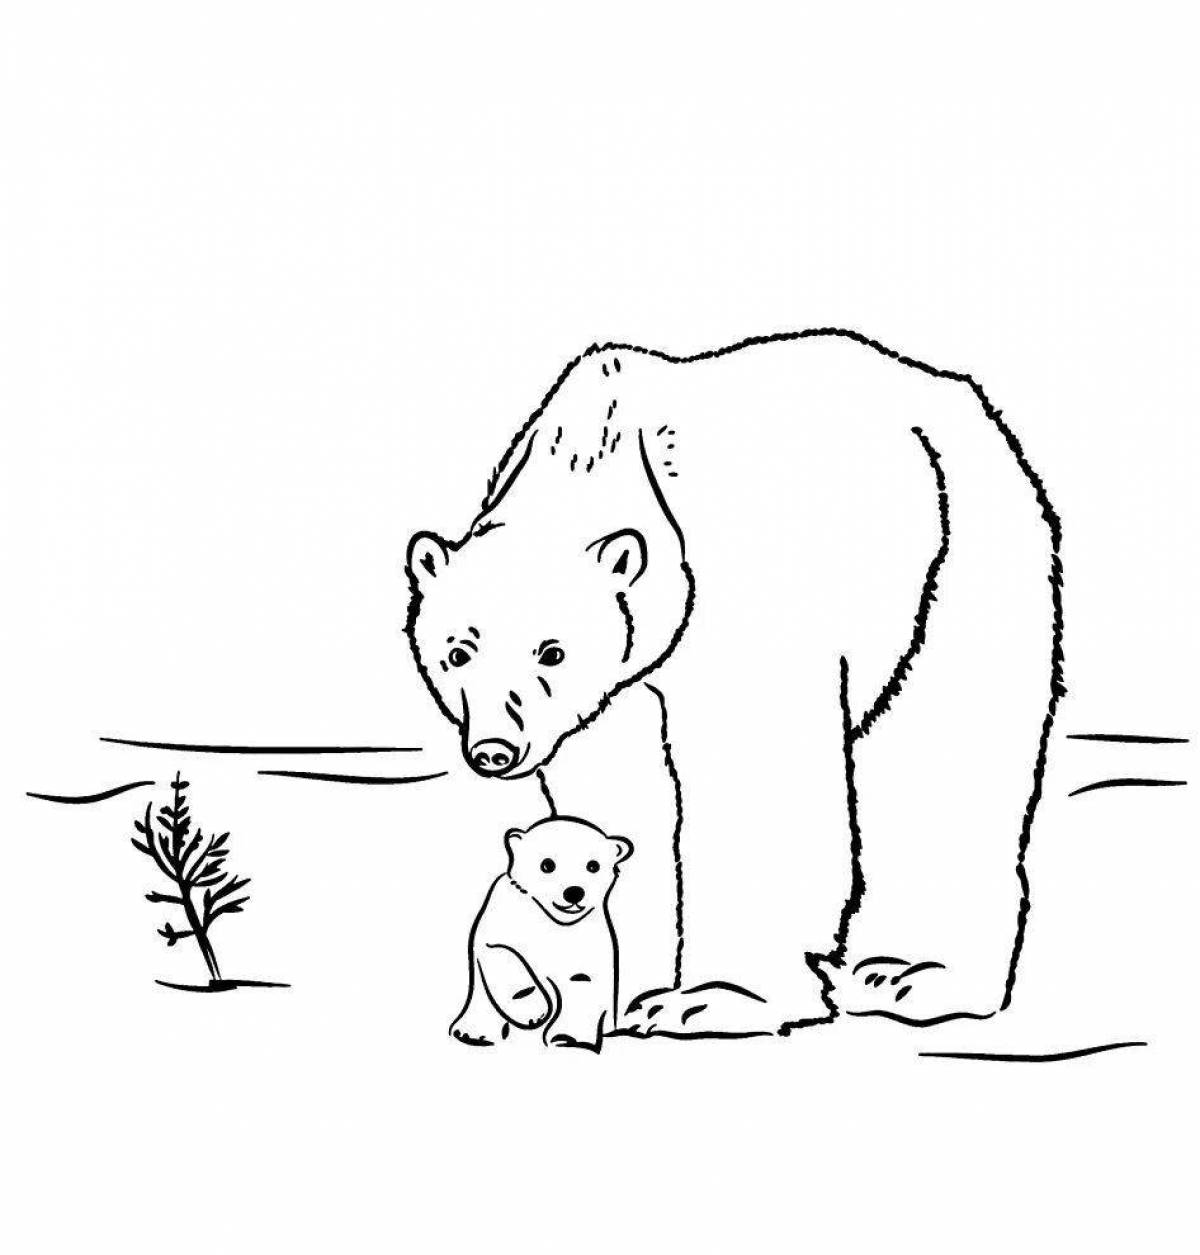 Adorable polar bear coloring book